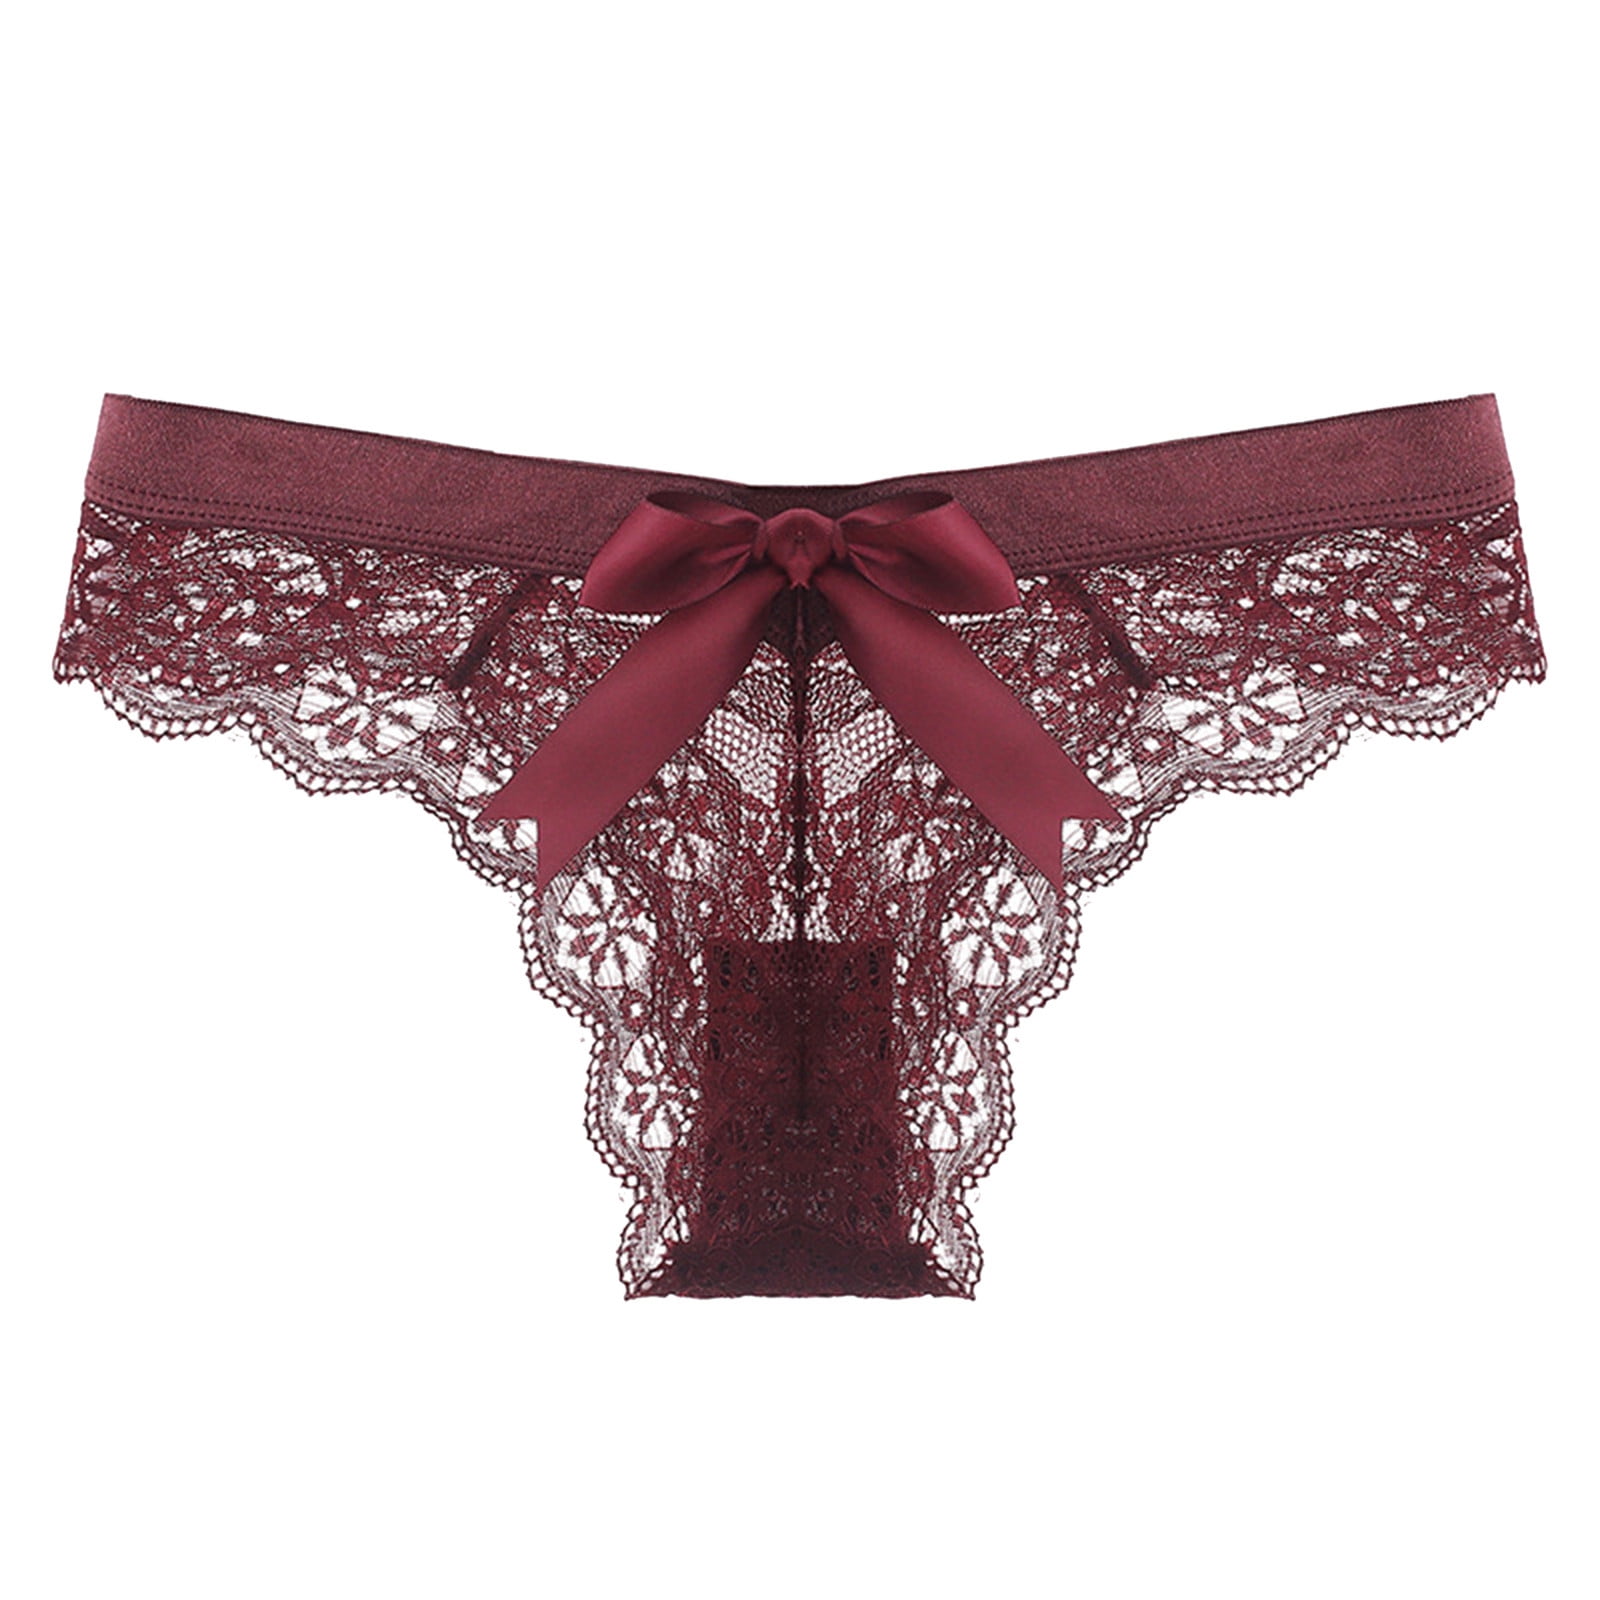 CBGELRT Women's Brief 1 Piece Floral Lace Panties Transparent